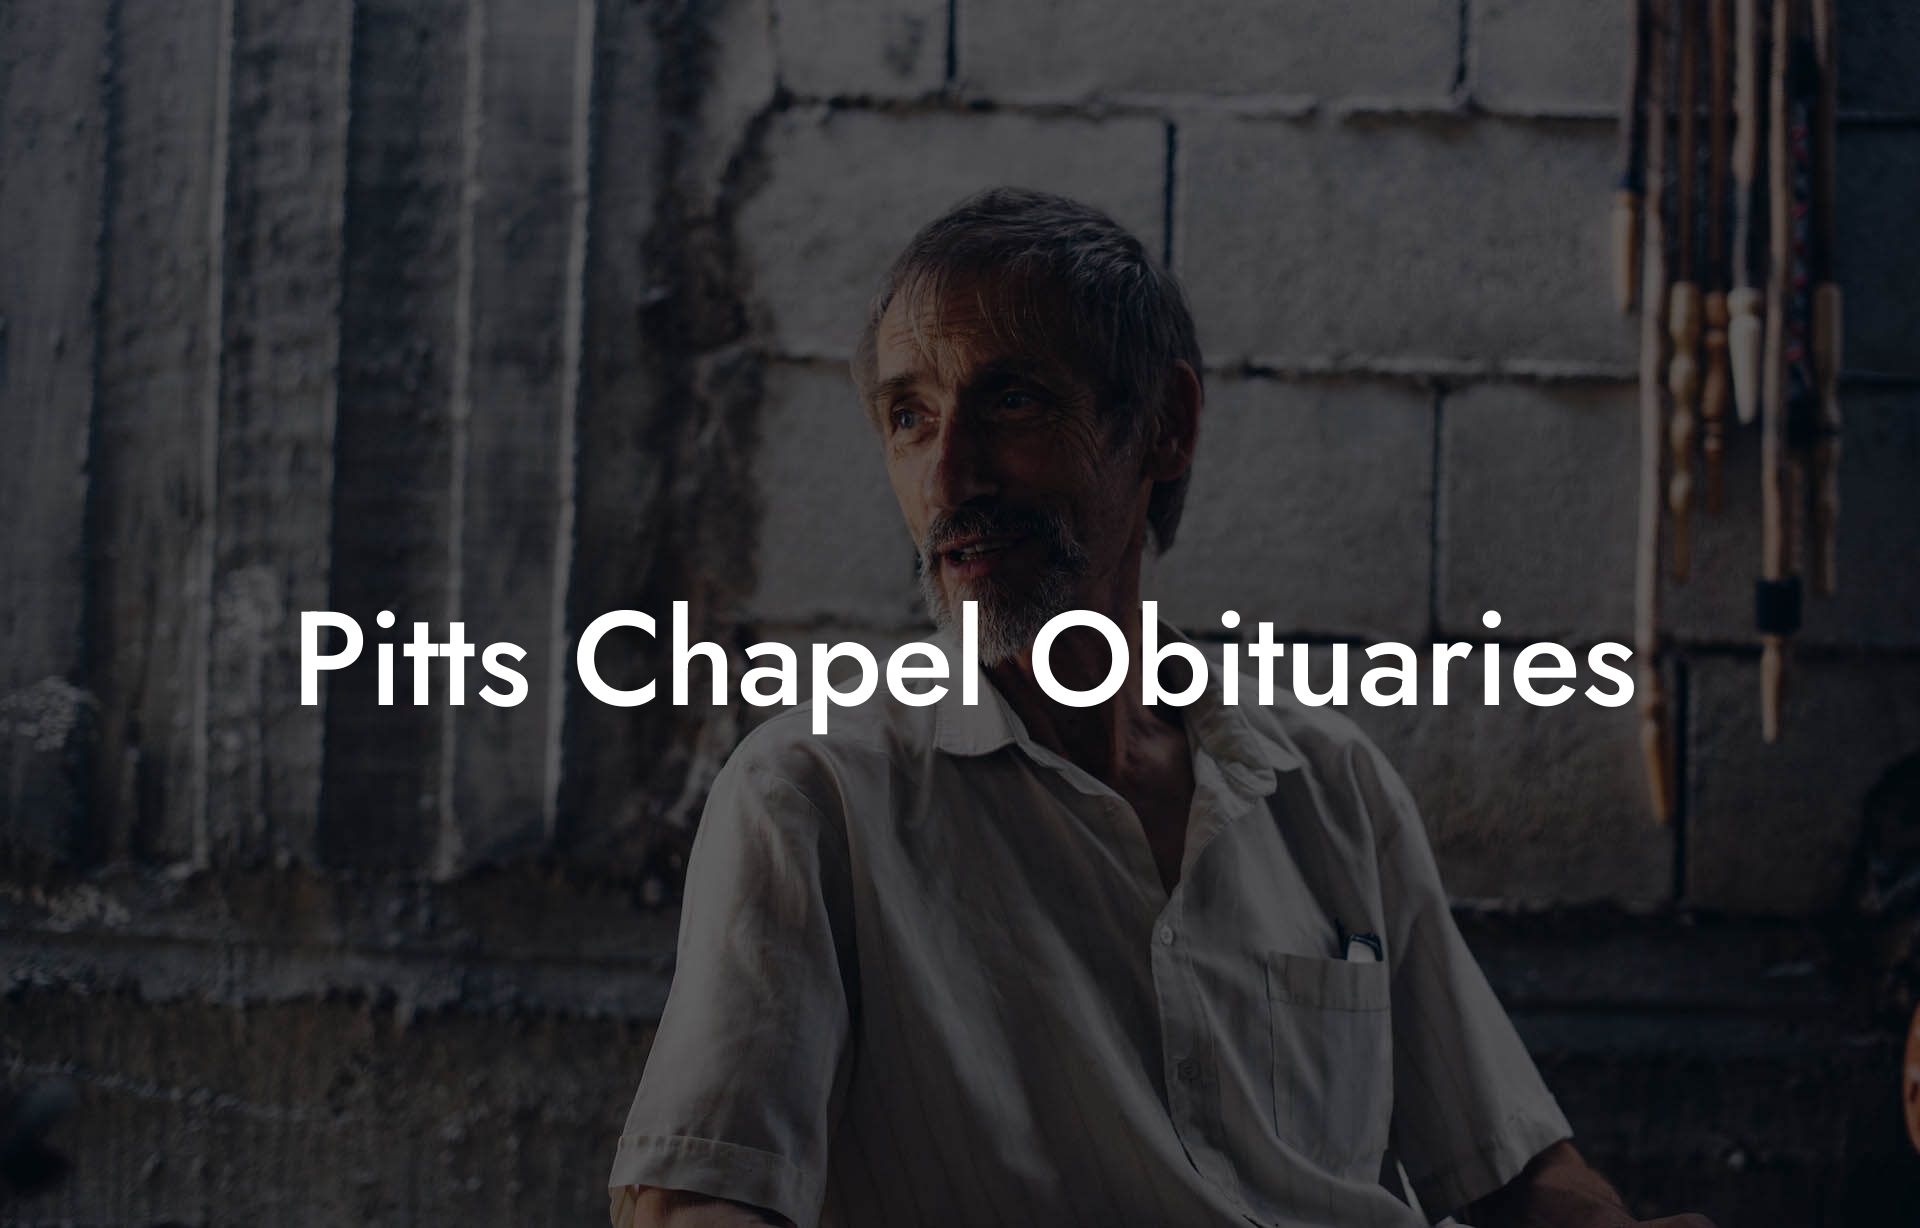 Pitts Chapel Obituaries